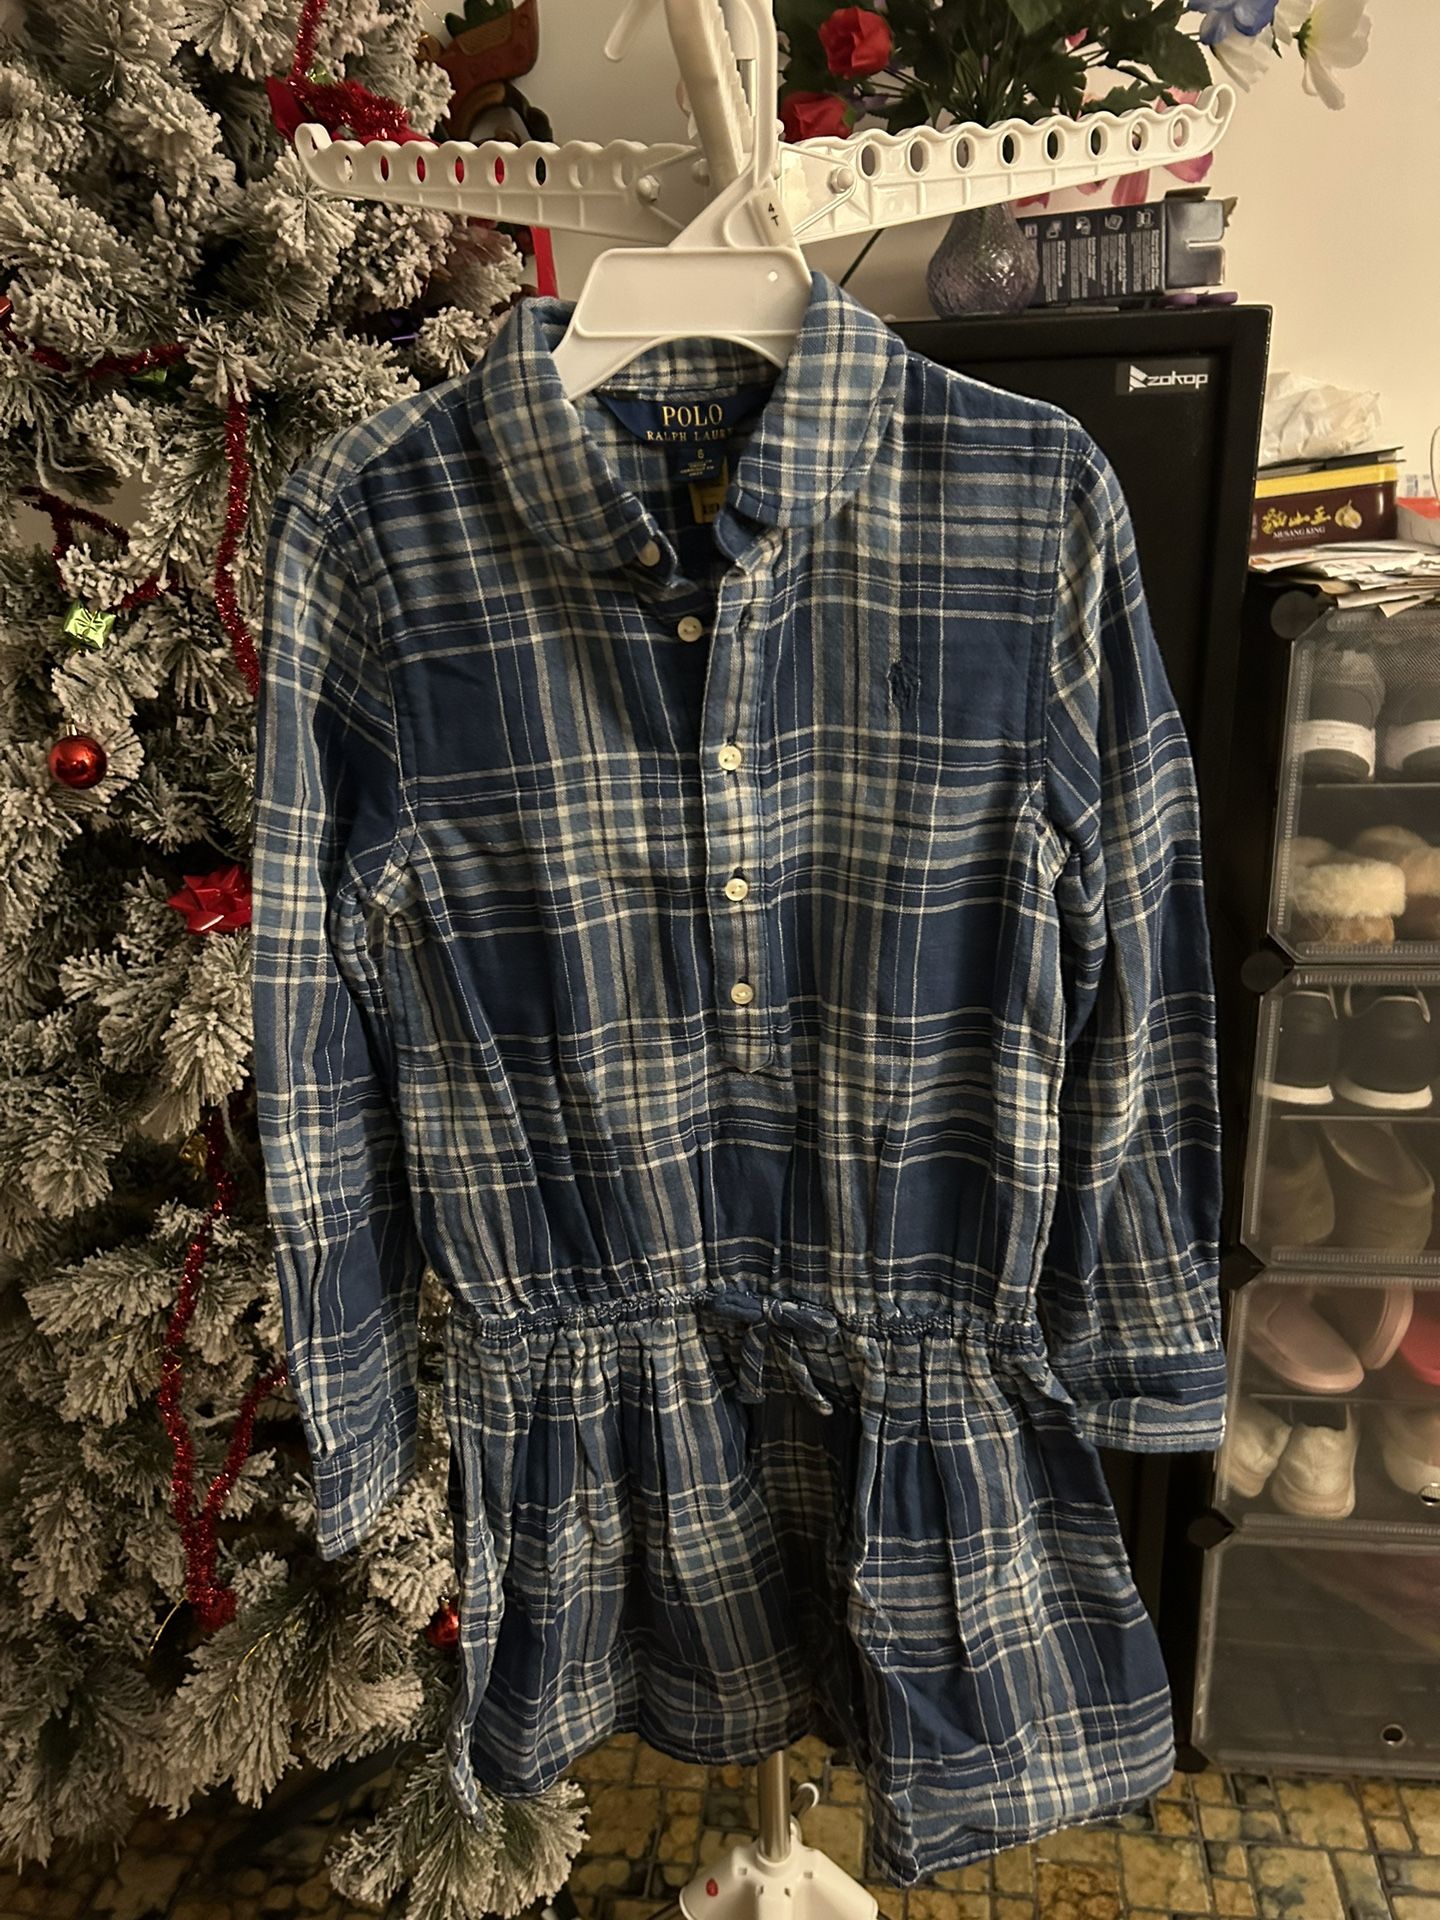 Polo Ralph Lauren Girls Shirt Dress Size6 NWT